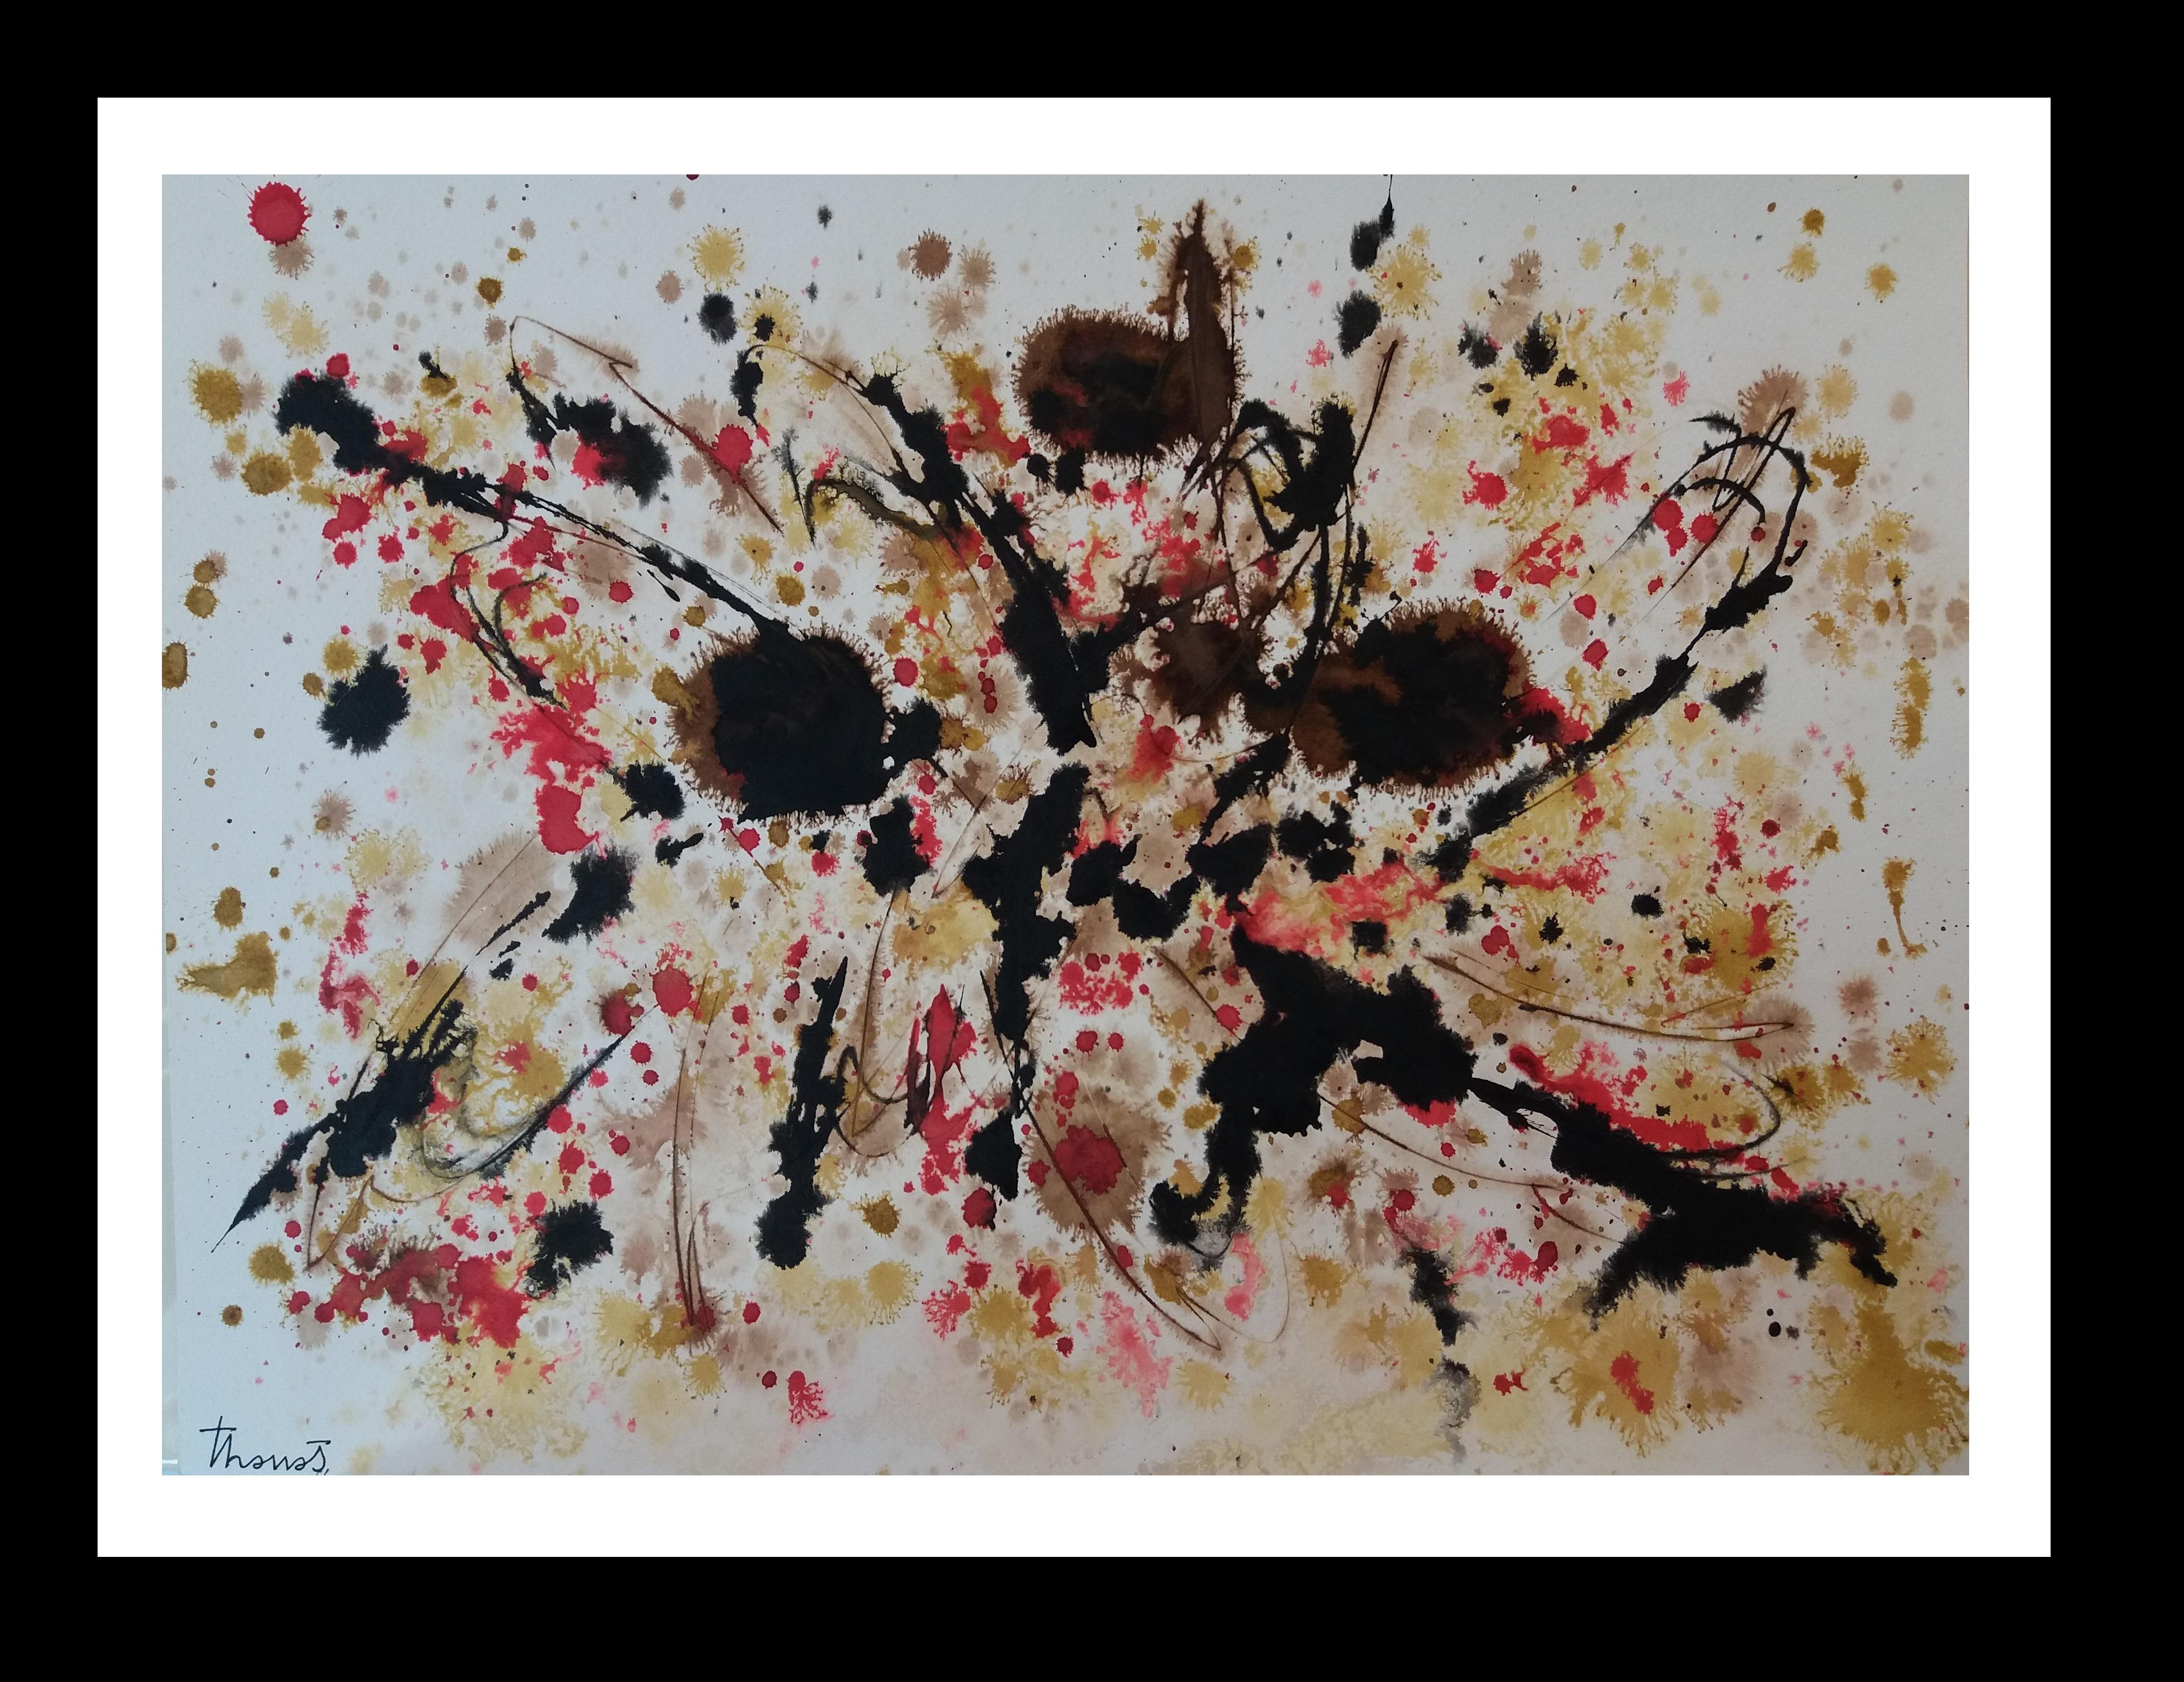 Abstract Painting Josep THARRATS - Tharrats  Noir  Constellation 20  Peinture abstraite originale en papier acrylique